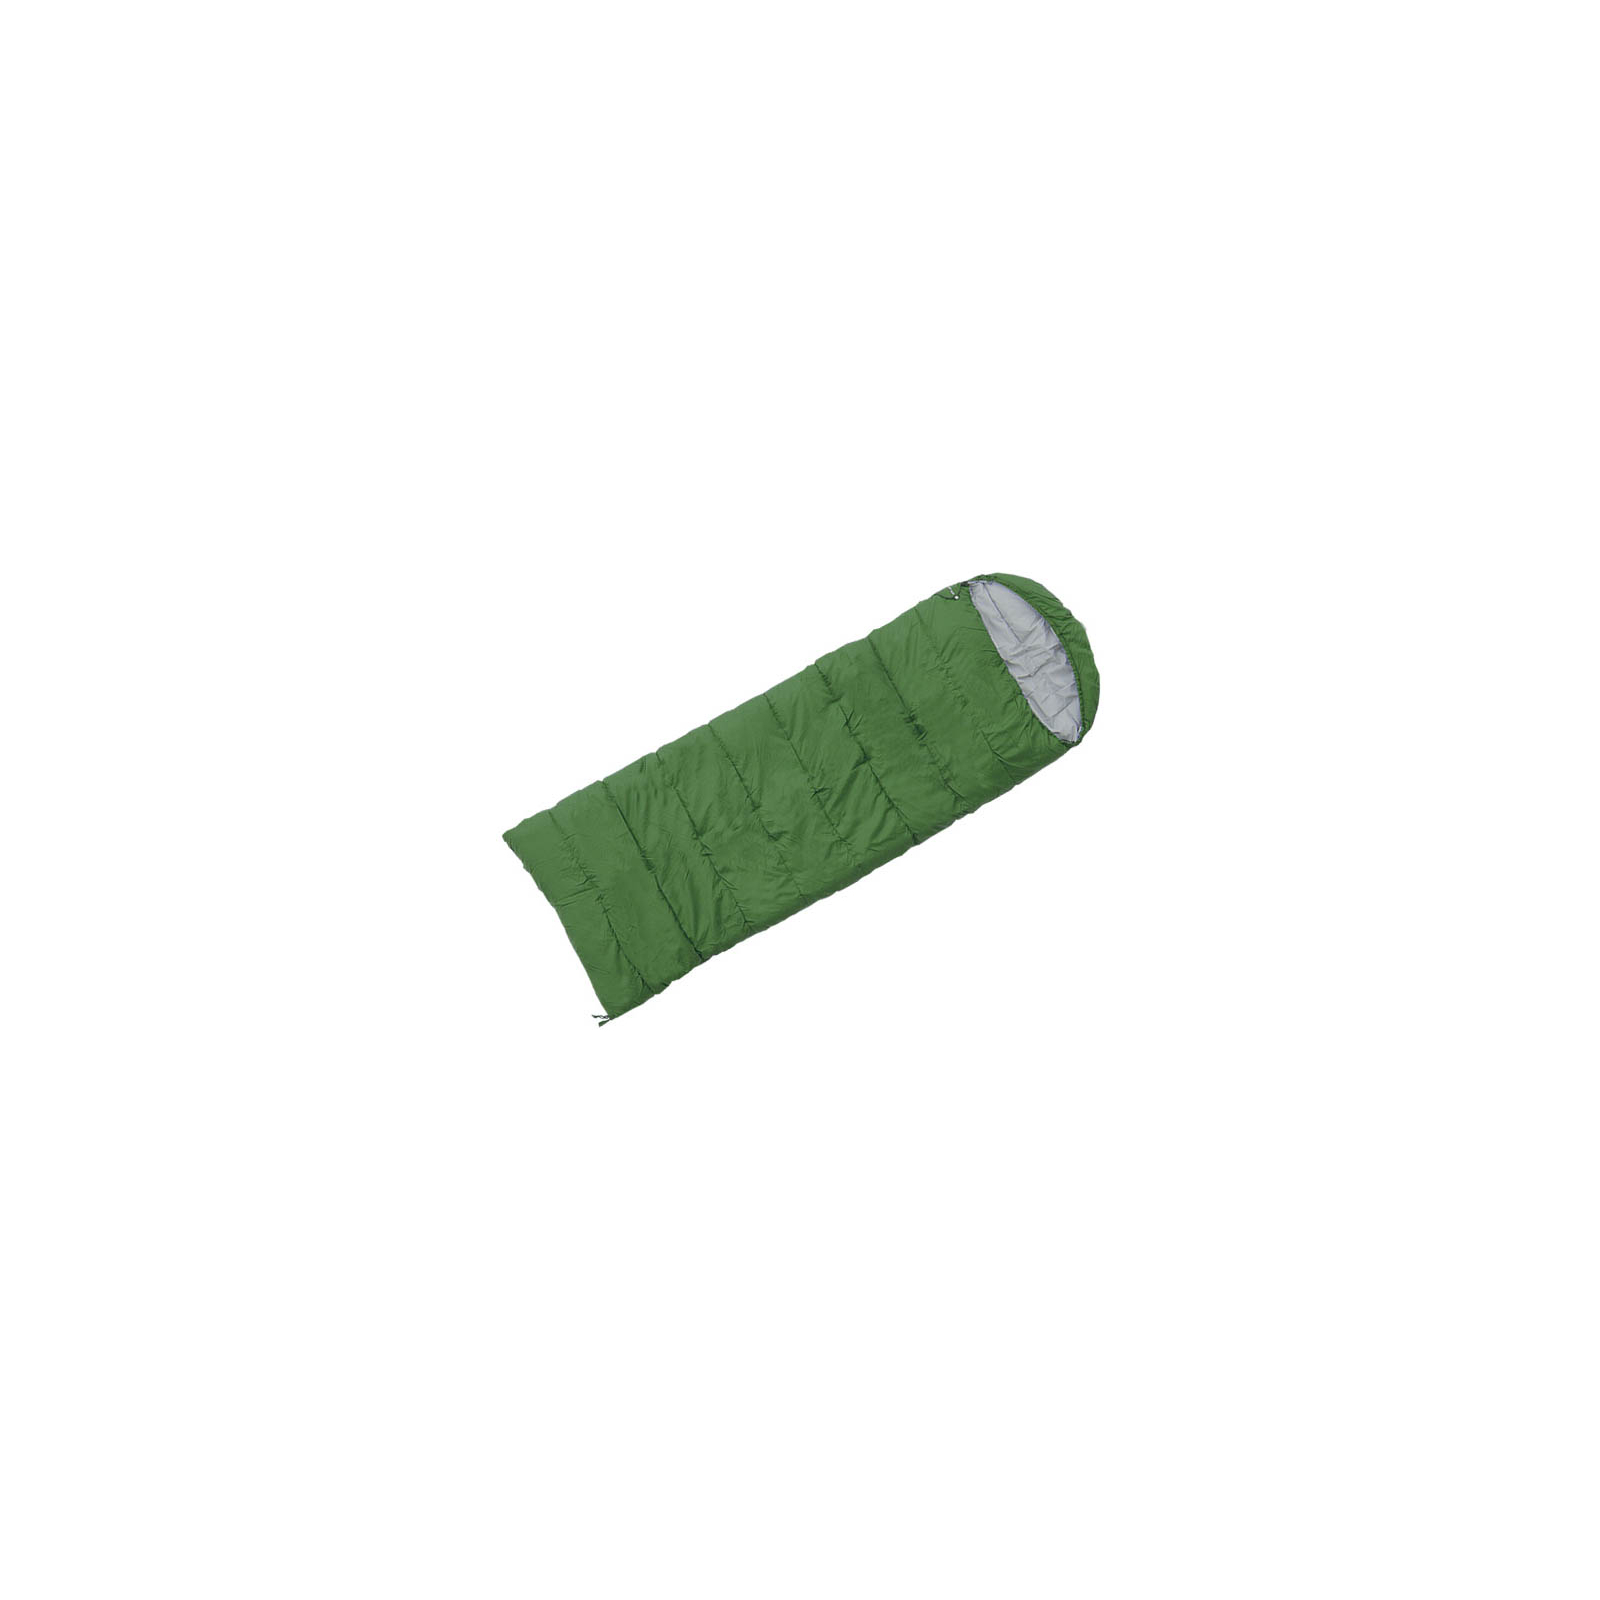 Спальный мешок Terra Incognita Asleep 300 L green (4823081502159)